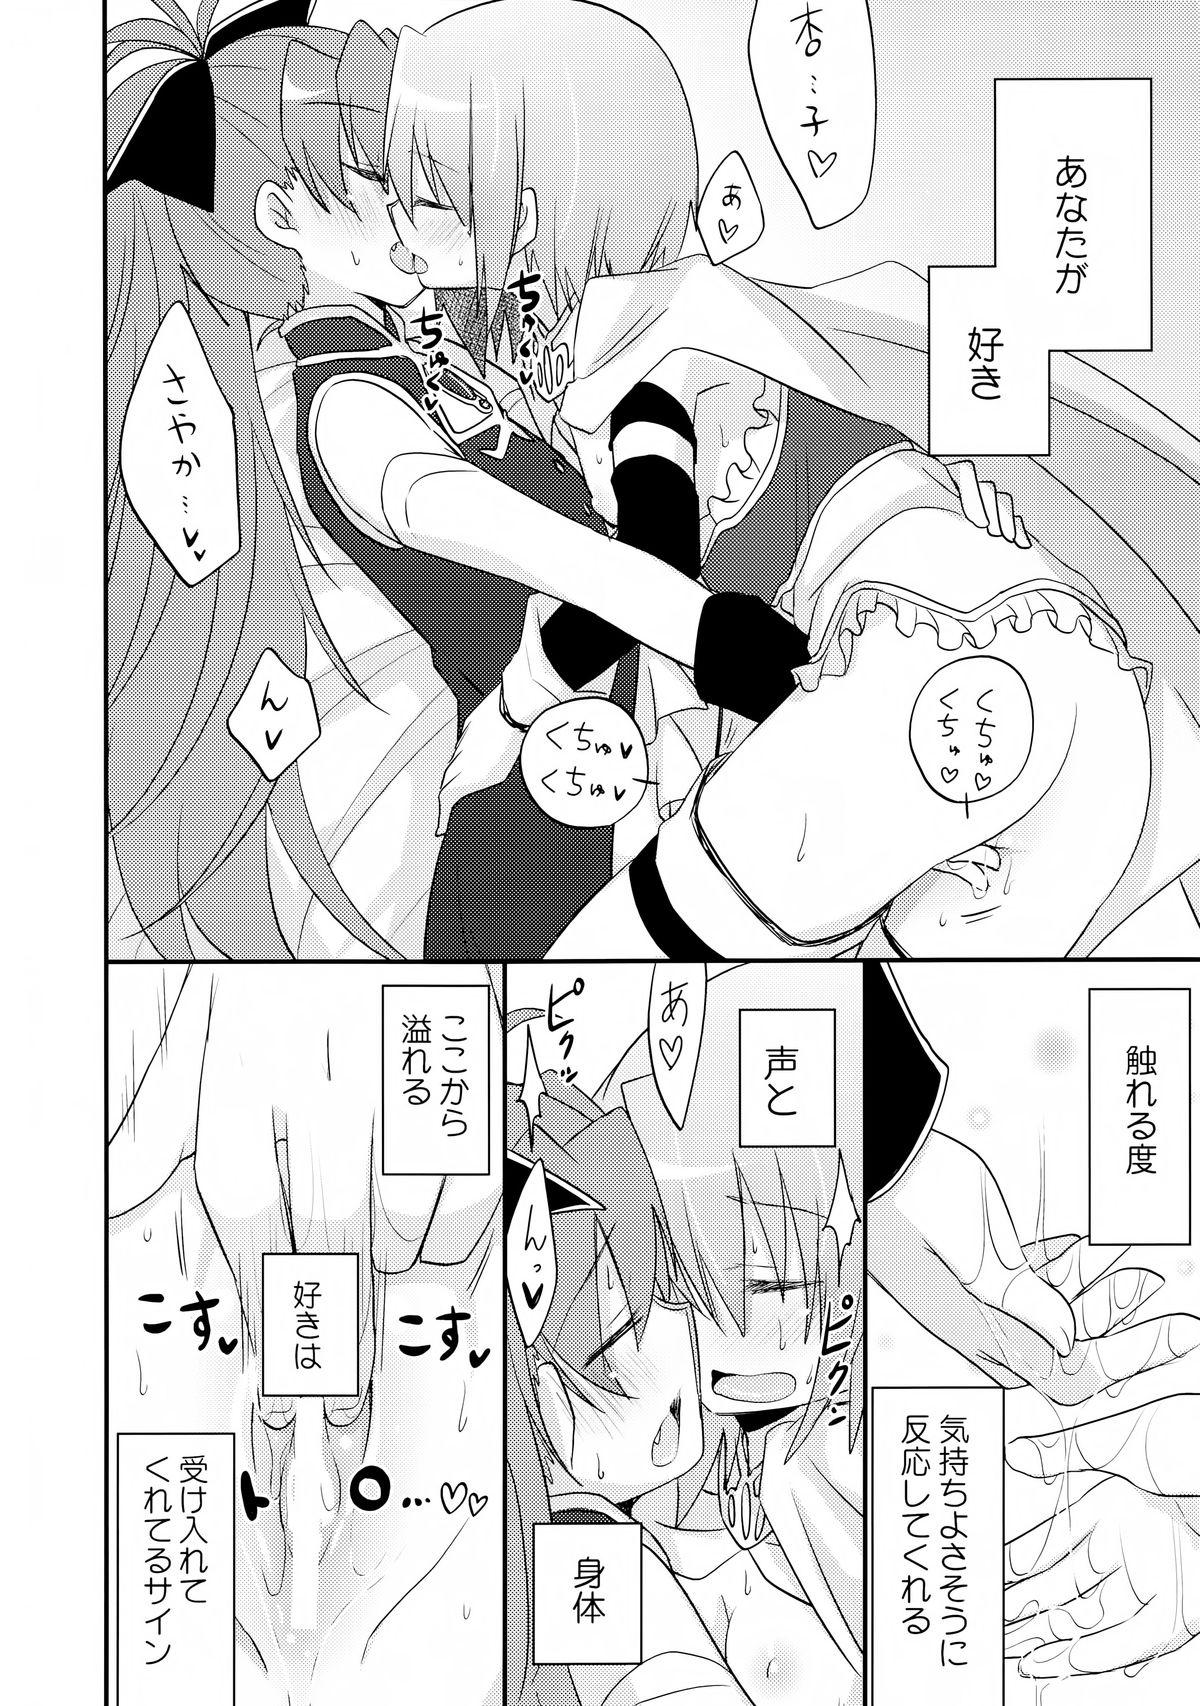 Gym Atashitachi no Jigo Senkyou - Puella magi madoka magica Stroking - Page 8